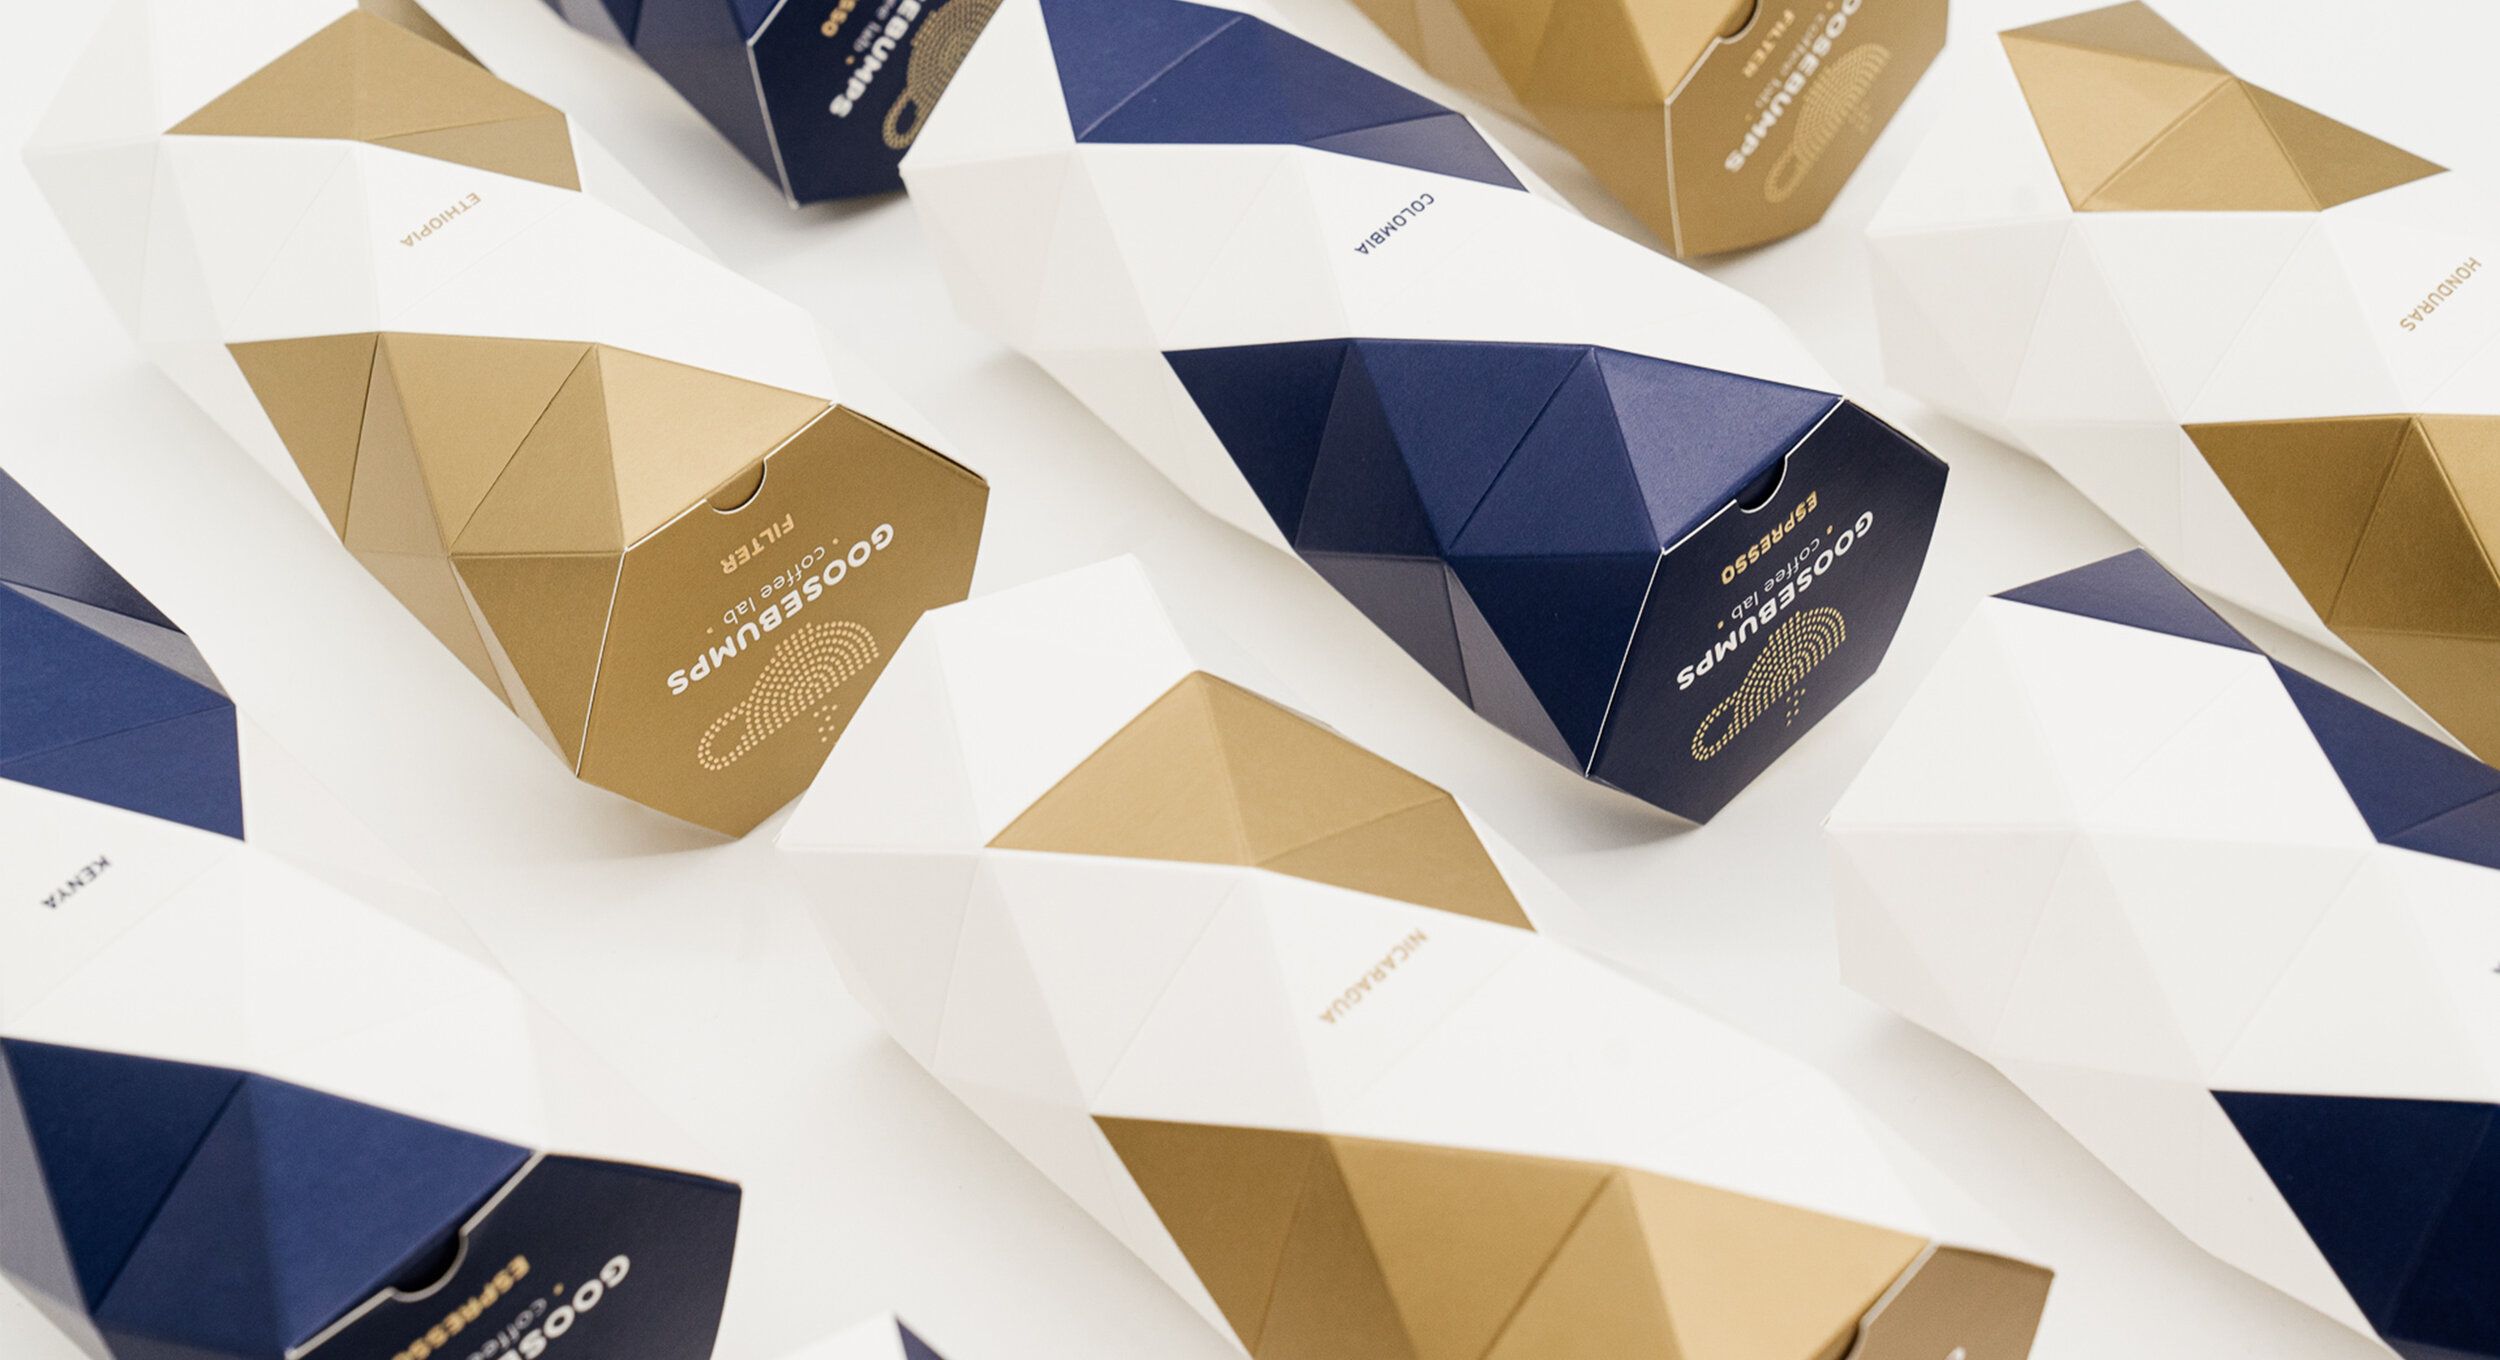 Goosebumps packaging design